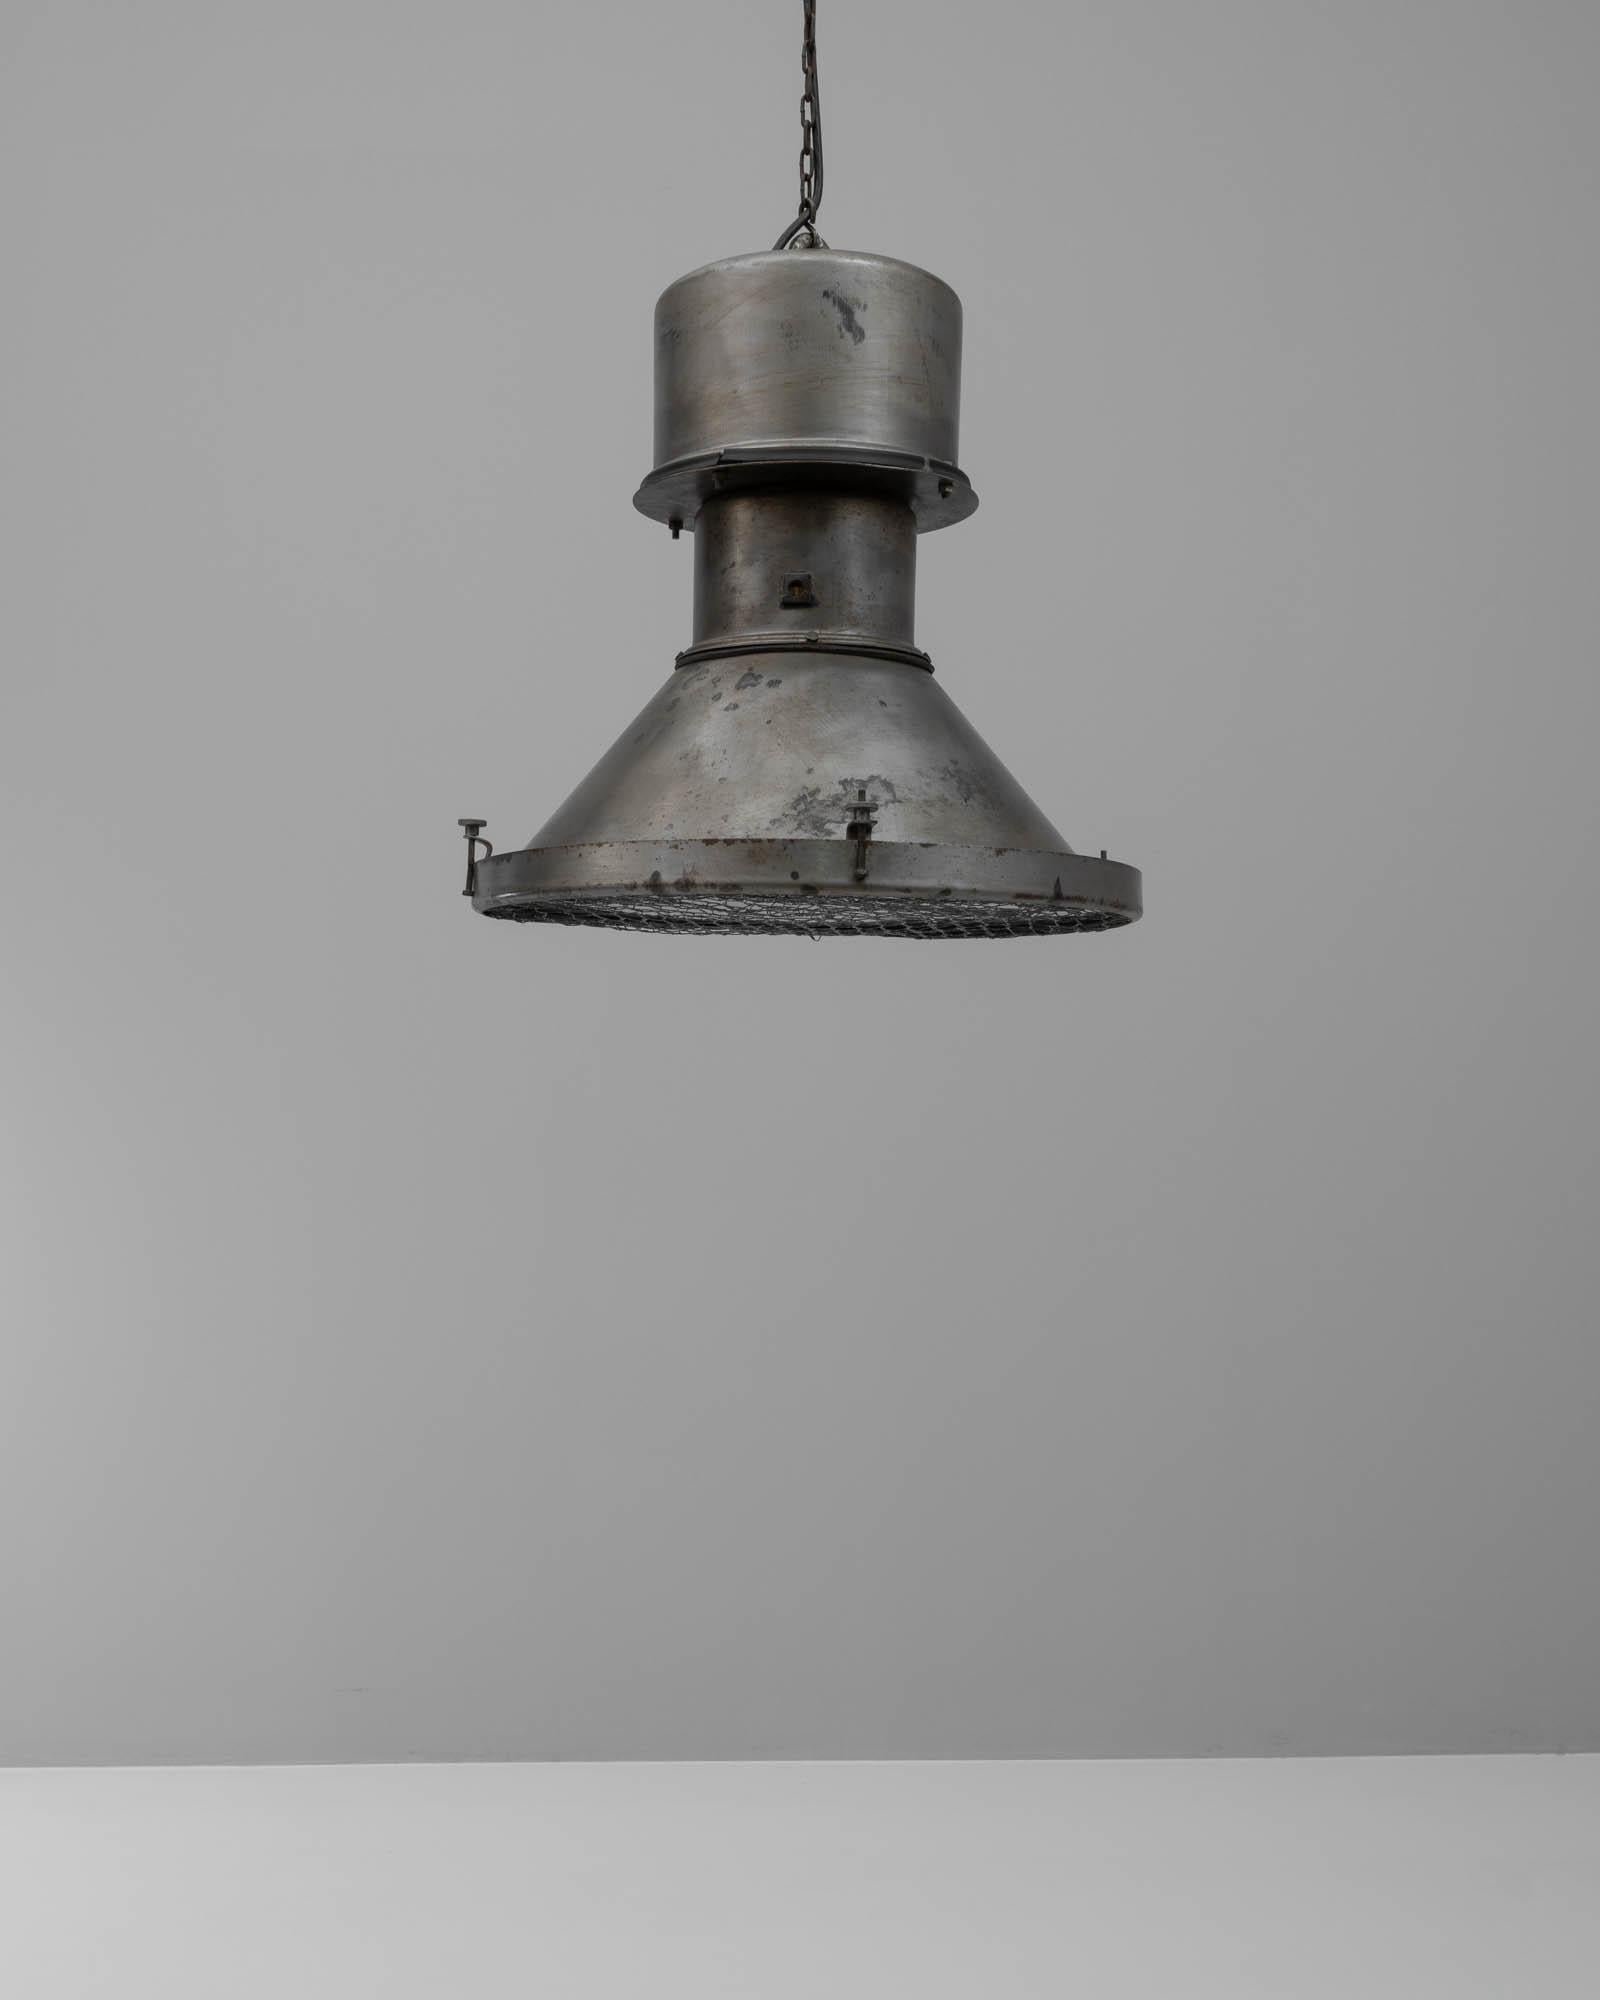 Cette lampe suspendue en métal polonais du 20e siècle dégage un charme industriel à la fois brut et raffiné. Le corps de la lampe est une construction métallique robuste, dont la surface présente l'usure honnête et la patine distinctive de son passé